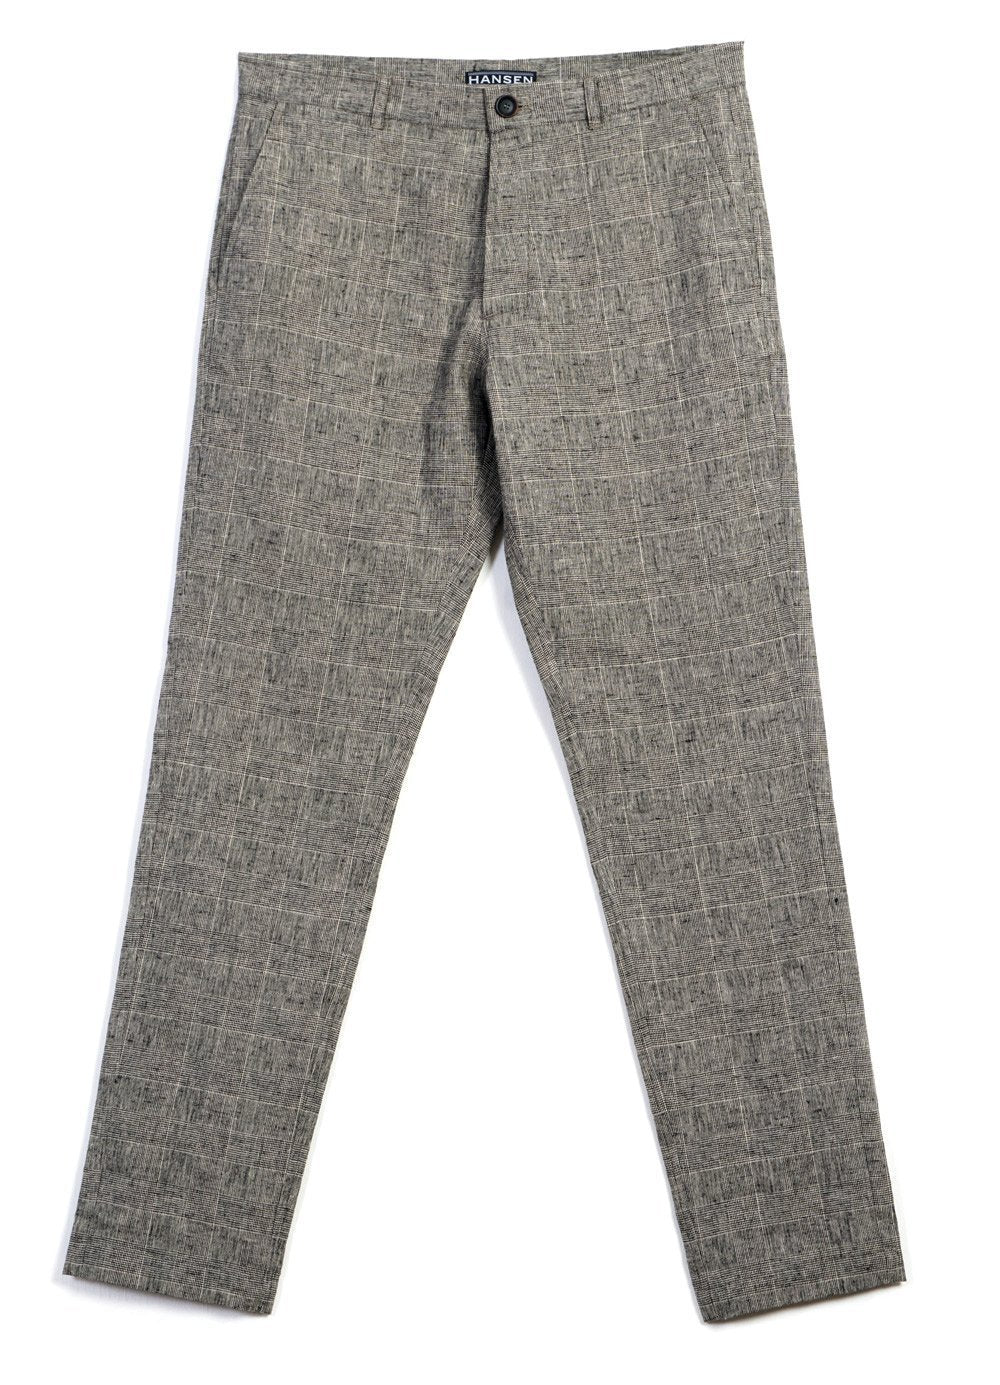 FRED | Regular Fit Trousers| Check 2 -HANSEN Garments- HANSEN Garments